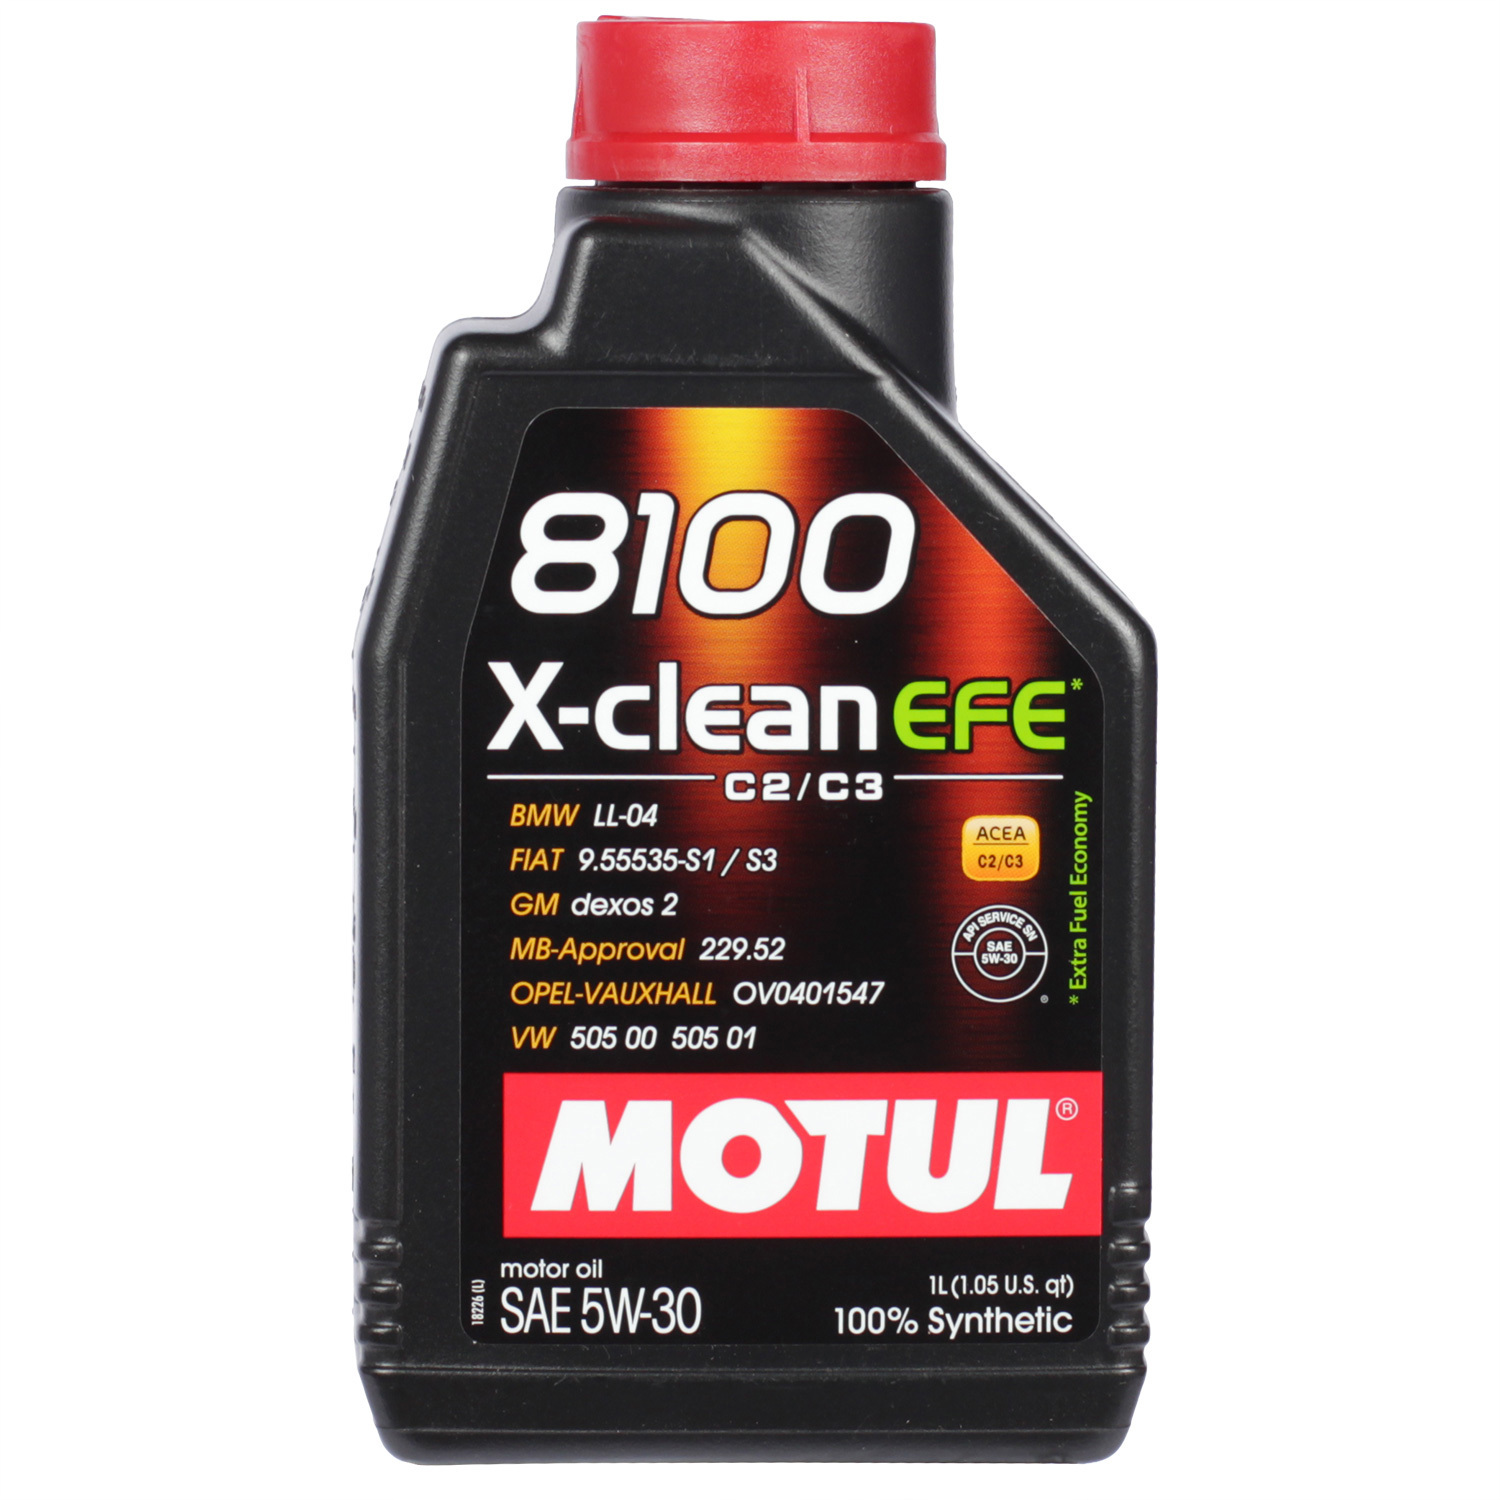 Motul Моторное масло Motul 8100 X-clean EFE 5W-30, 1 л масло моторное motul 8100 x clean efe 5w 30 синтетическое 5 л